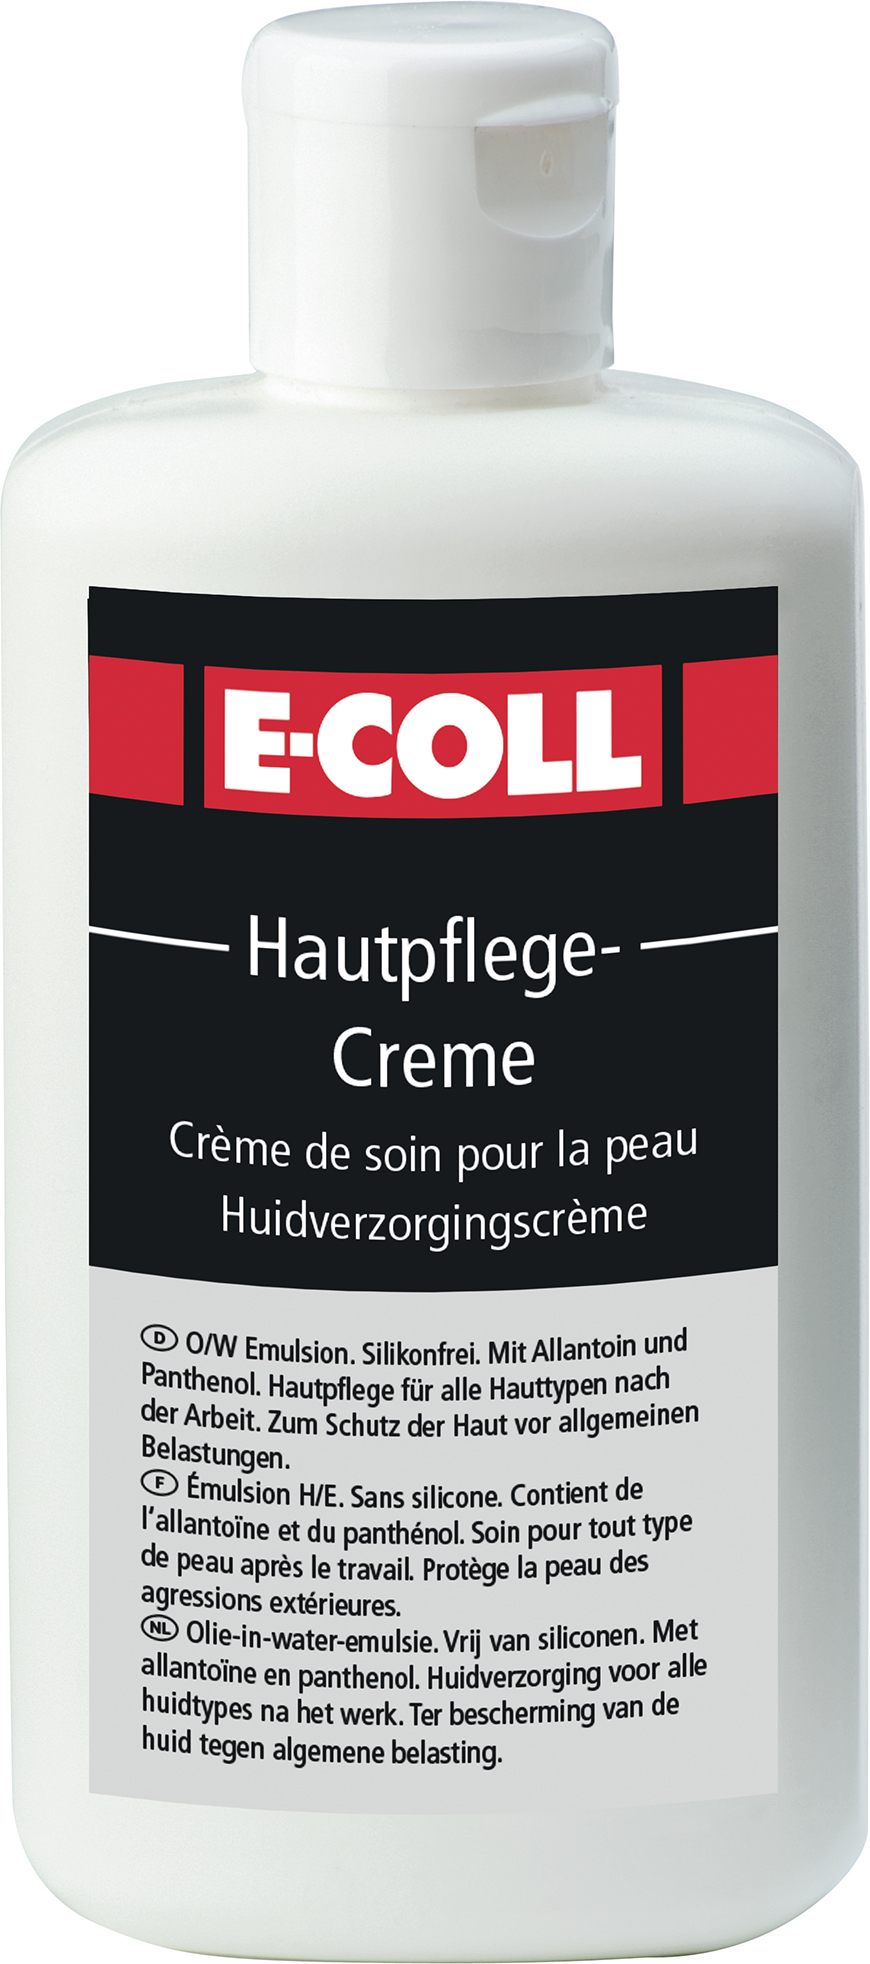 Picture of Hautpflegecreme 100ml Flasche E-COLL